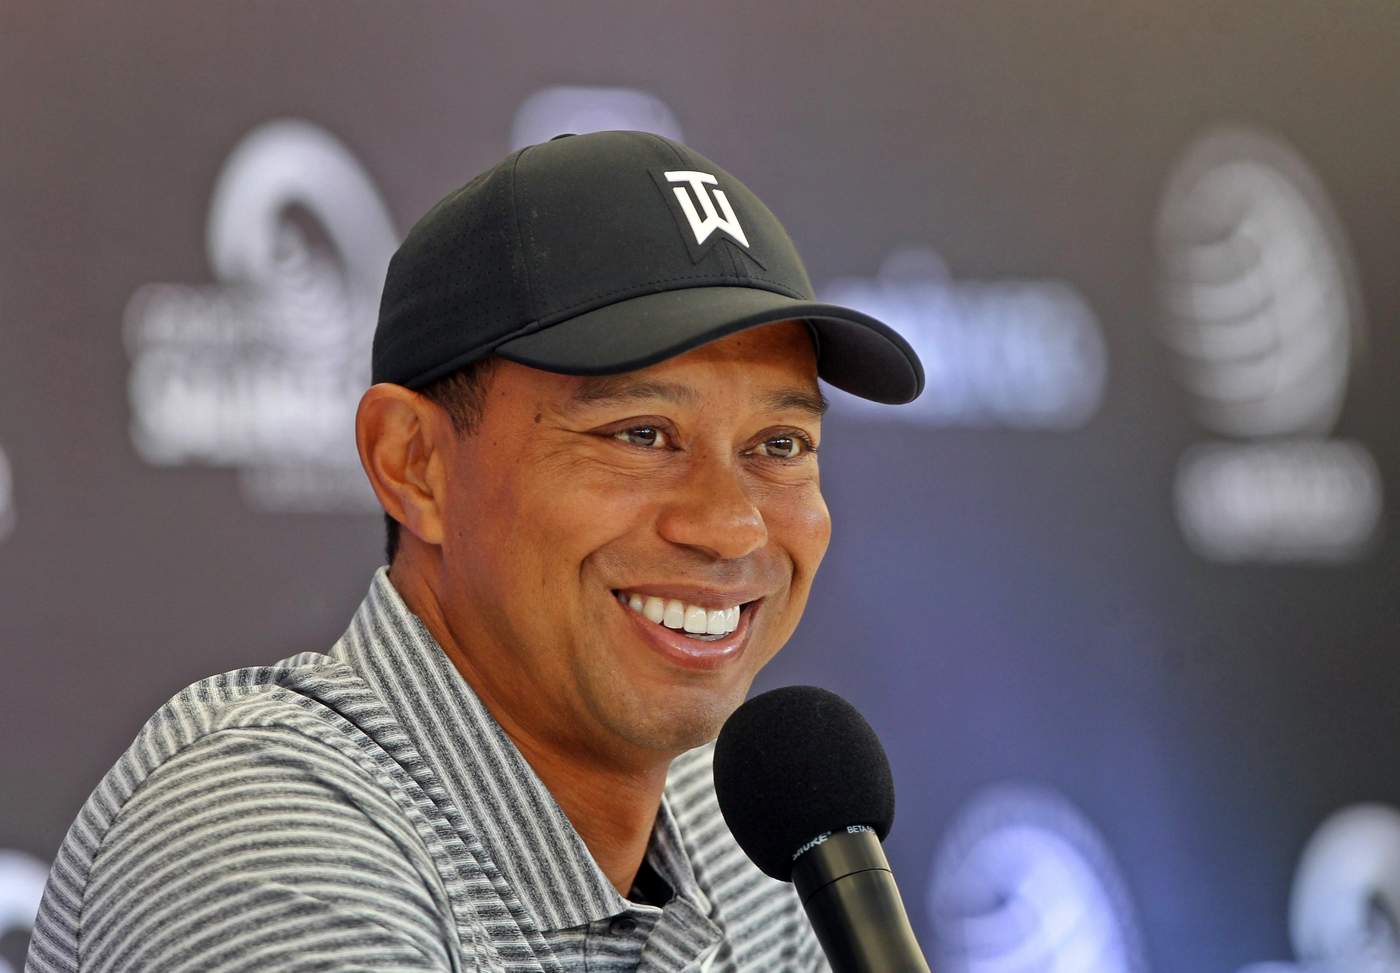 Tiger, quien llegó el lunes a la capital mexicana y el martes realizó su primera práctica, dijo estar dispuesto a cooperar para que el golf crezca en México.